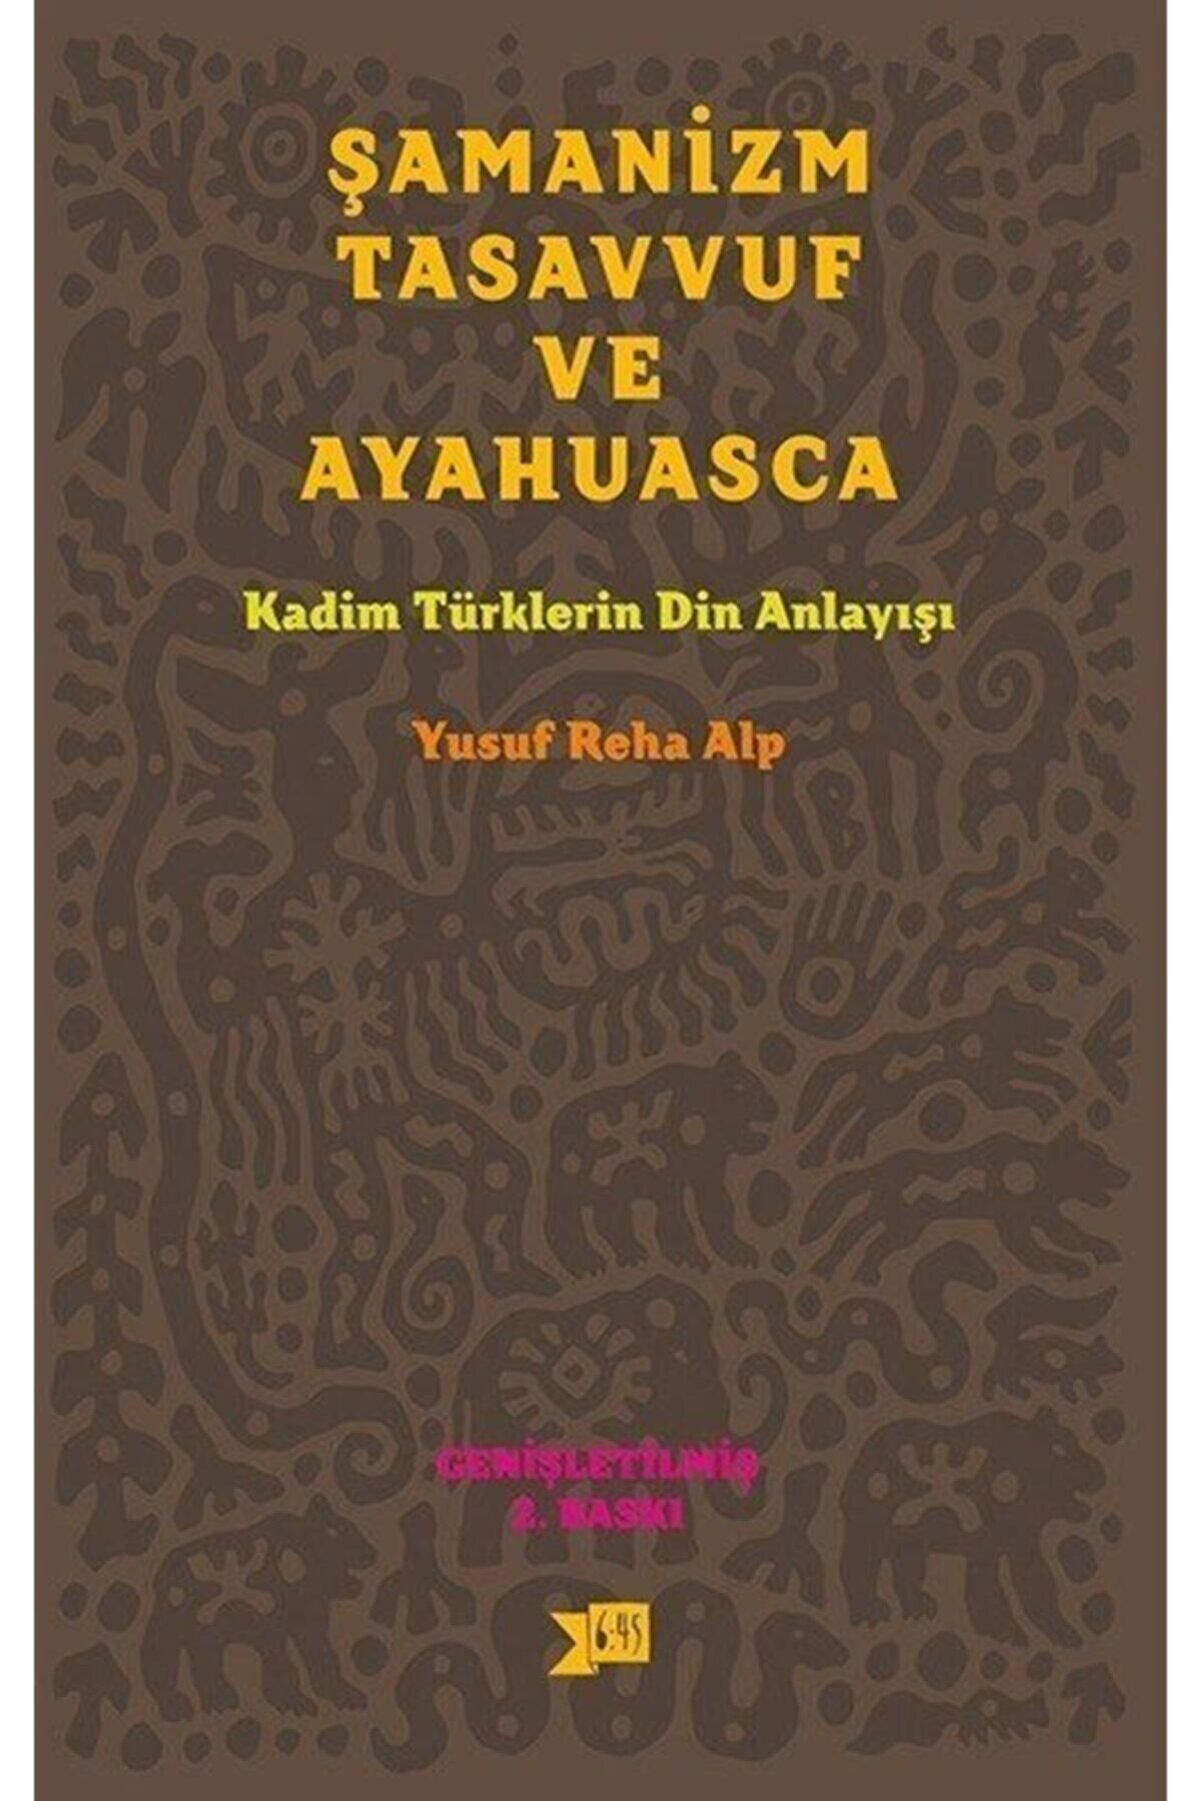 Altıkırkbeş Yayınları Şamanizm Tasavvuf Ve Ayahuasca & Kadim Türklerin Din Anlayışı